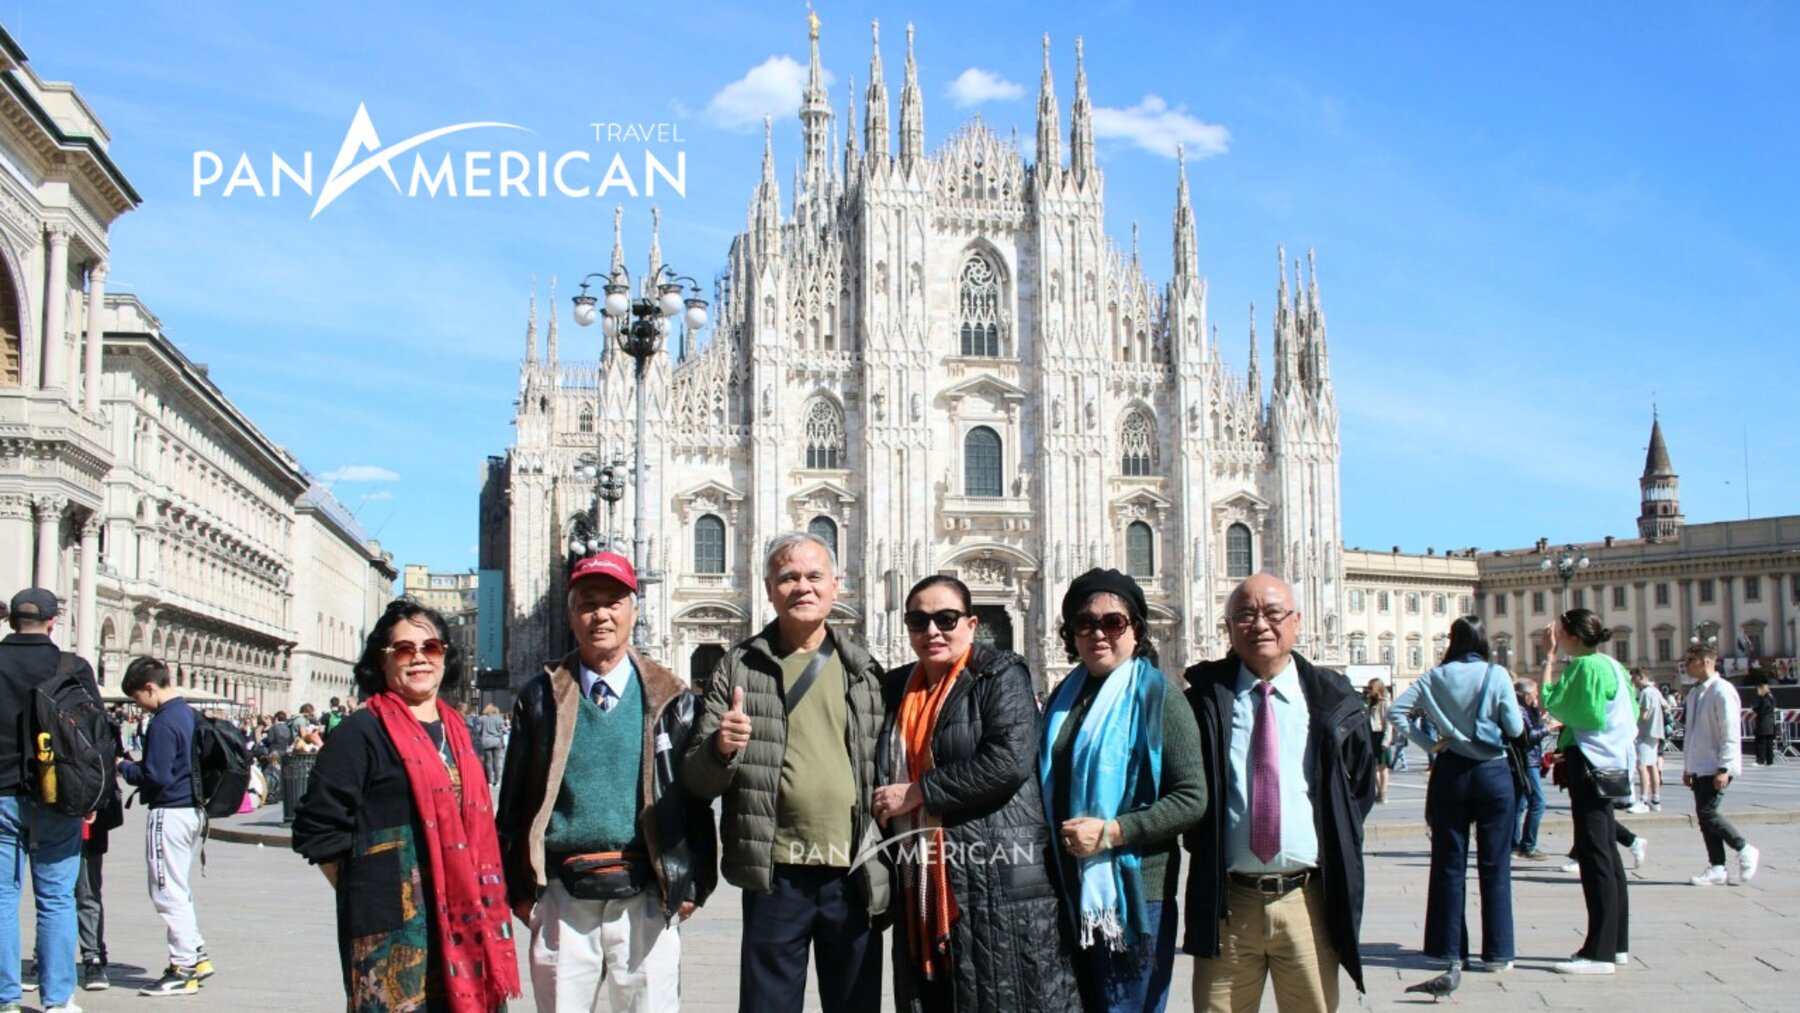 Đoàn khách của Pan American Travel ghé thăm nhà thờ Duomo Milan 